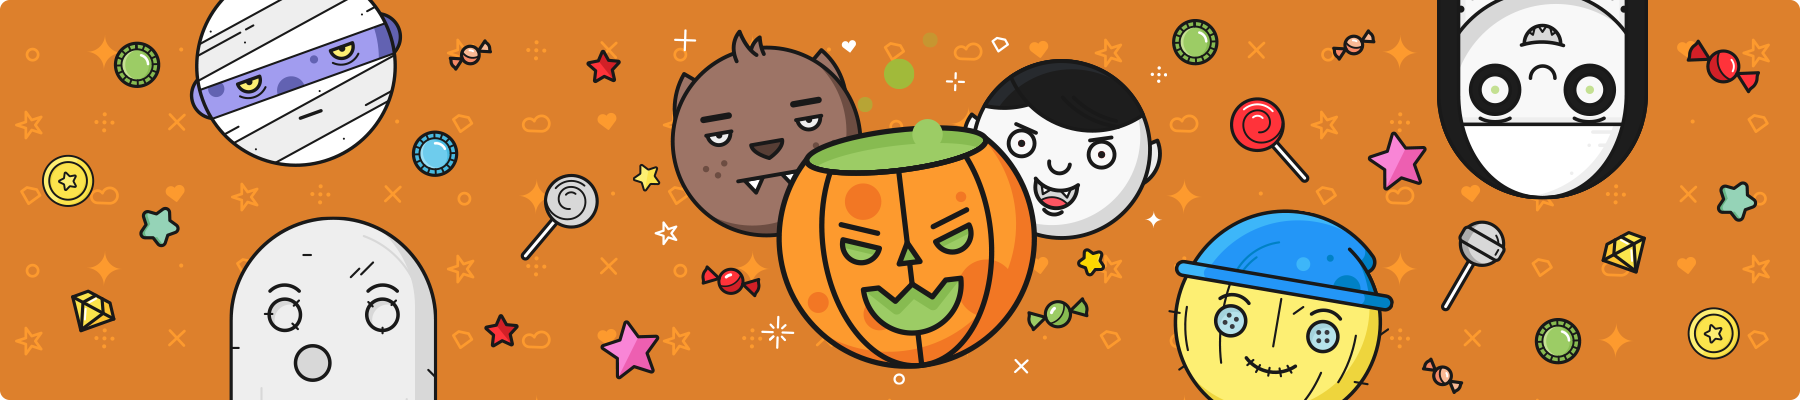  Destaque mensal - AskGamblers lança uma promoção de Halloween super assustadora, mas incrível